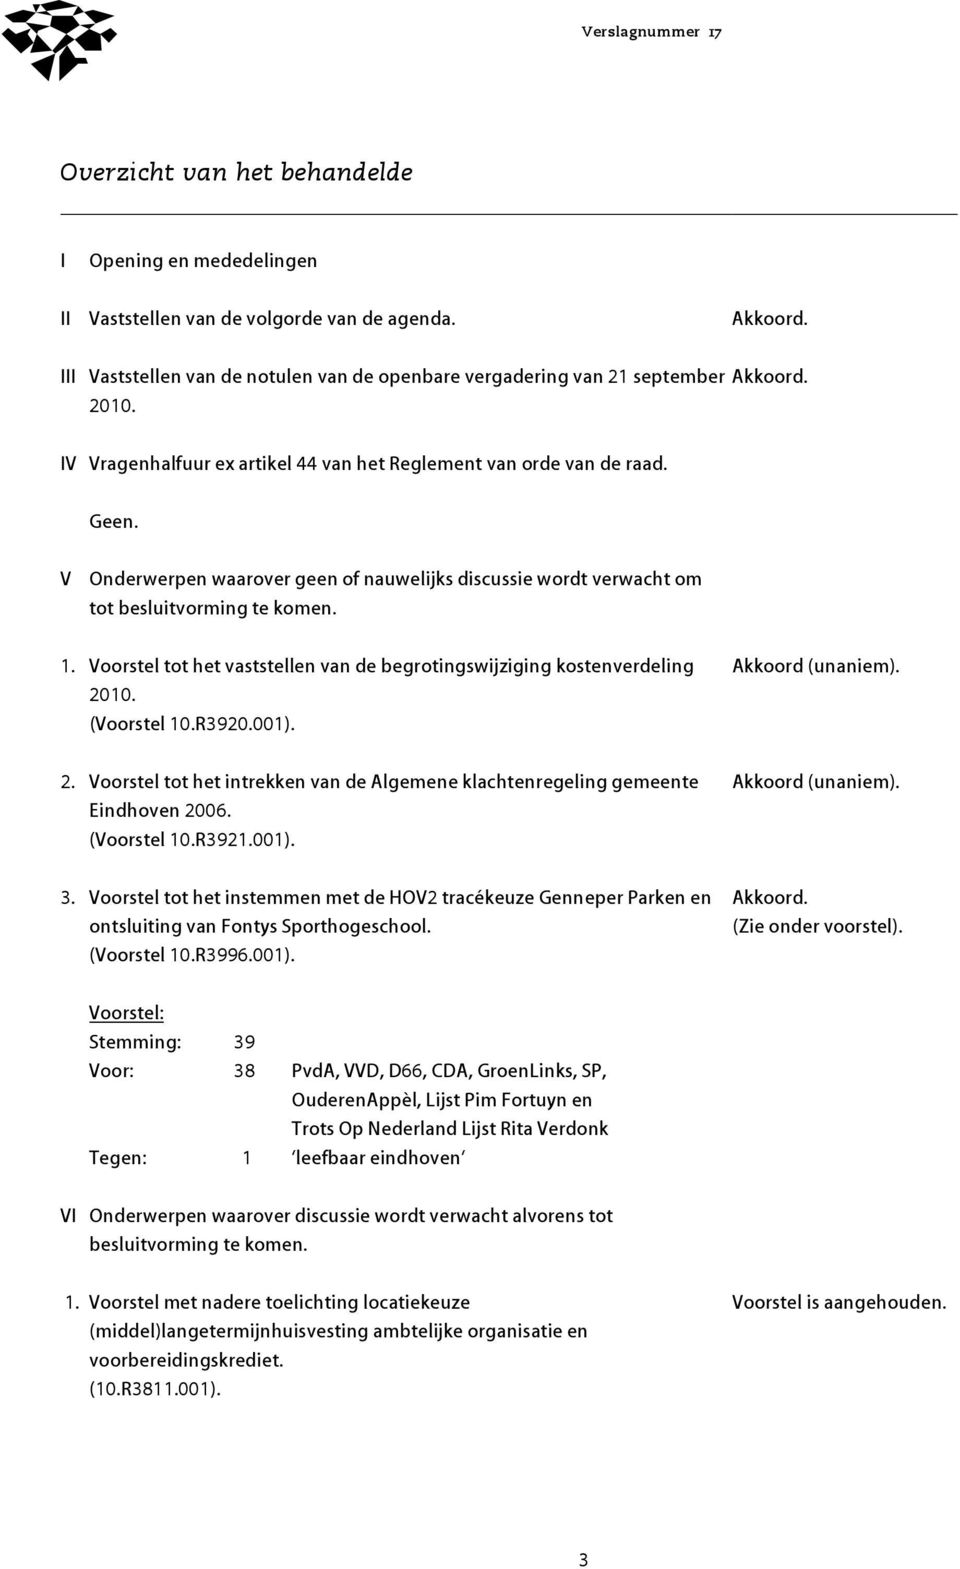 R3920.001). Akkoord (unaniem). 2. Voorstel tot het intrekken van de Algemene klachtenregeling gemeente Eindhoven 2006. (Voorstel 10.R3921.001). Akkoord (unaniem). 3.